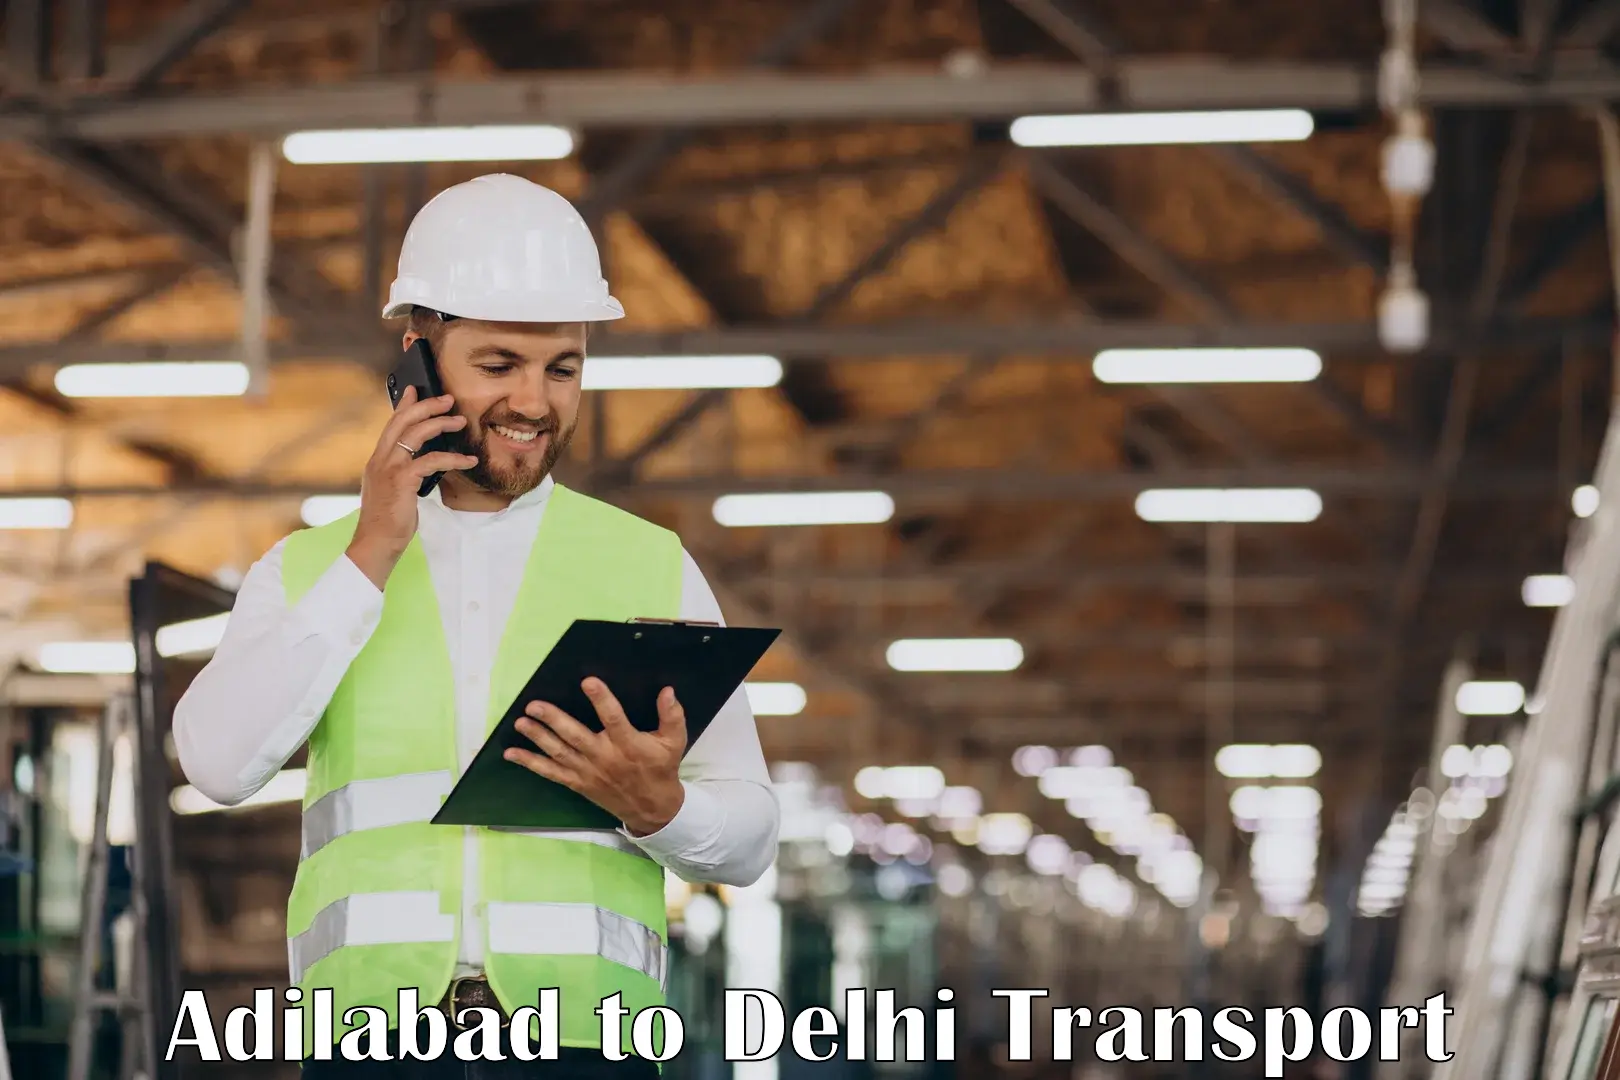 International cargo transportation services Adilabad to Delhi